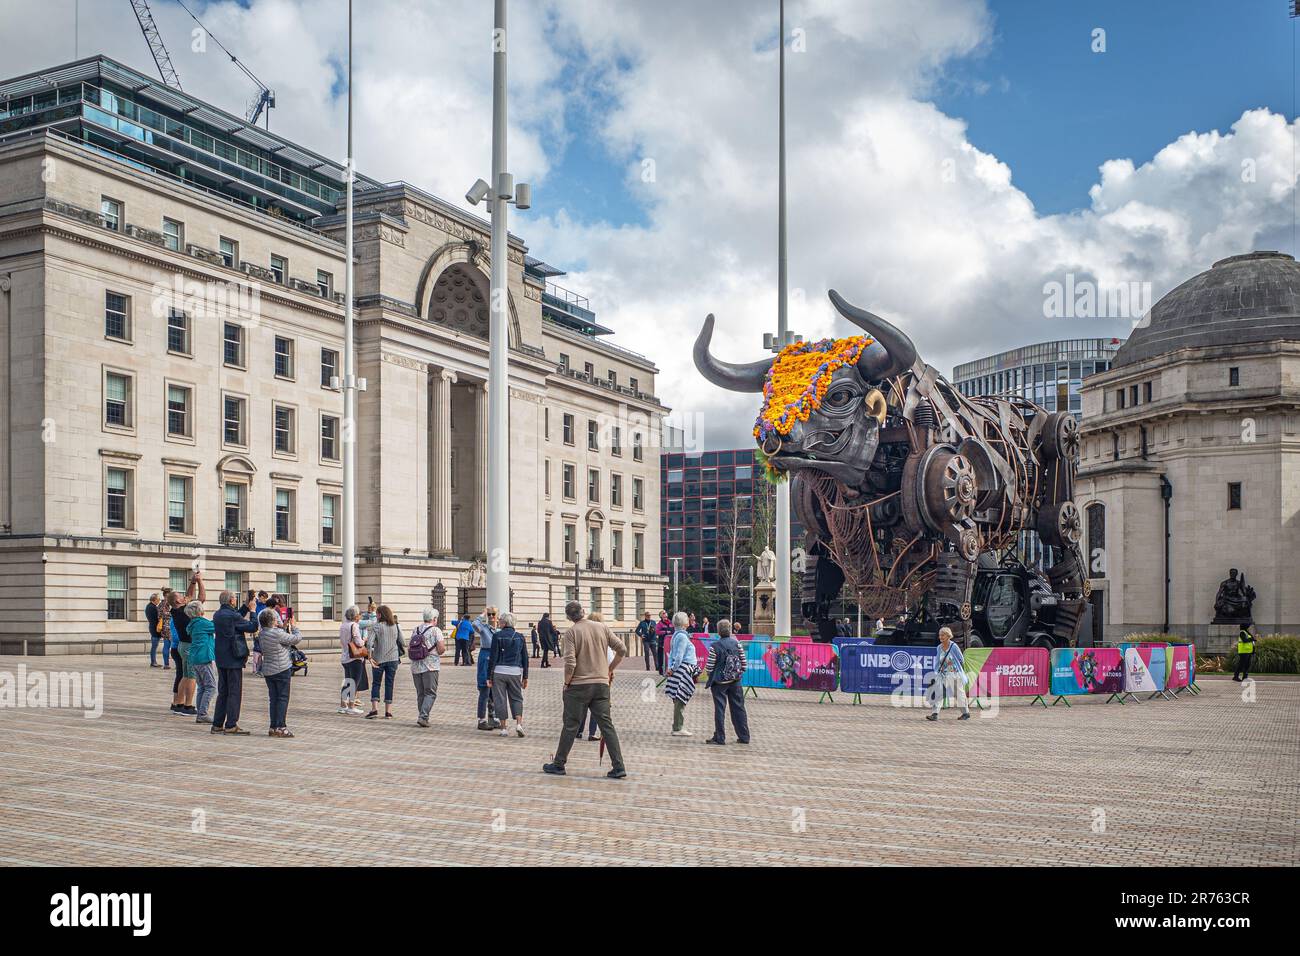 Turisti e turisti che scattano fotografie dell'iconica toro di metallo gigante che è apparsa per la prima volta durante i giochi del Commonwealth di Birmingham. Polination. Foto Stock